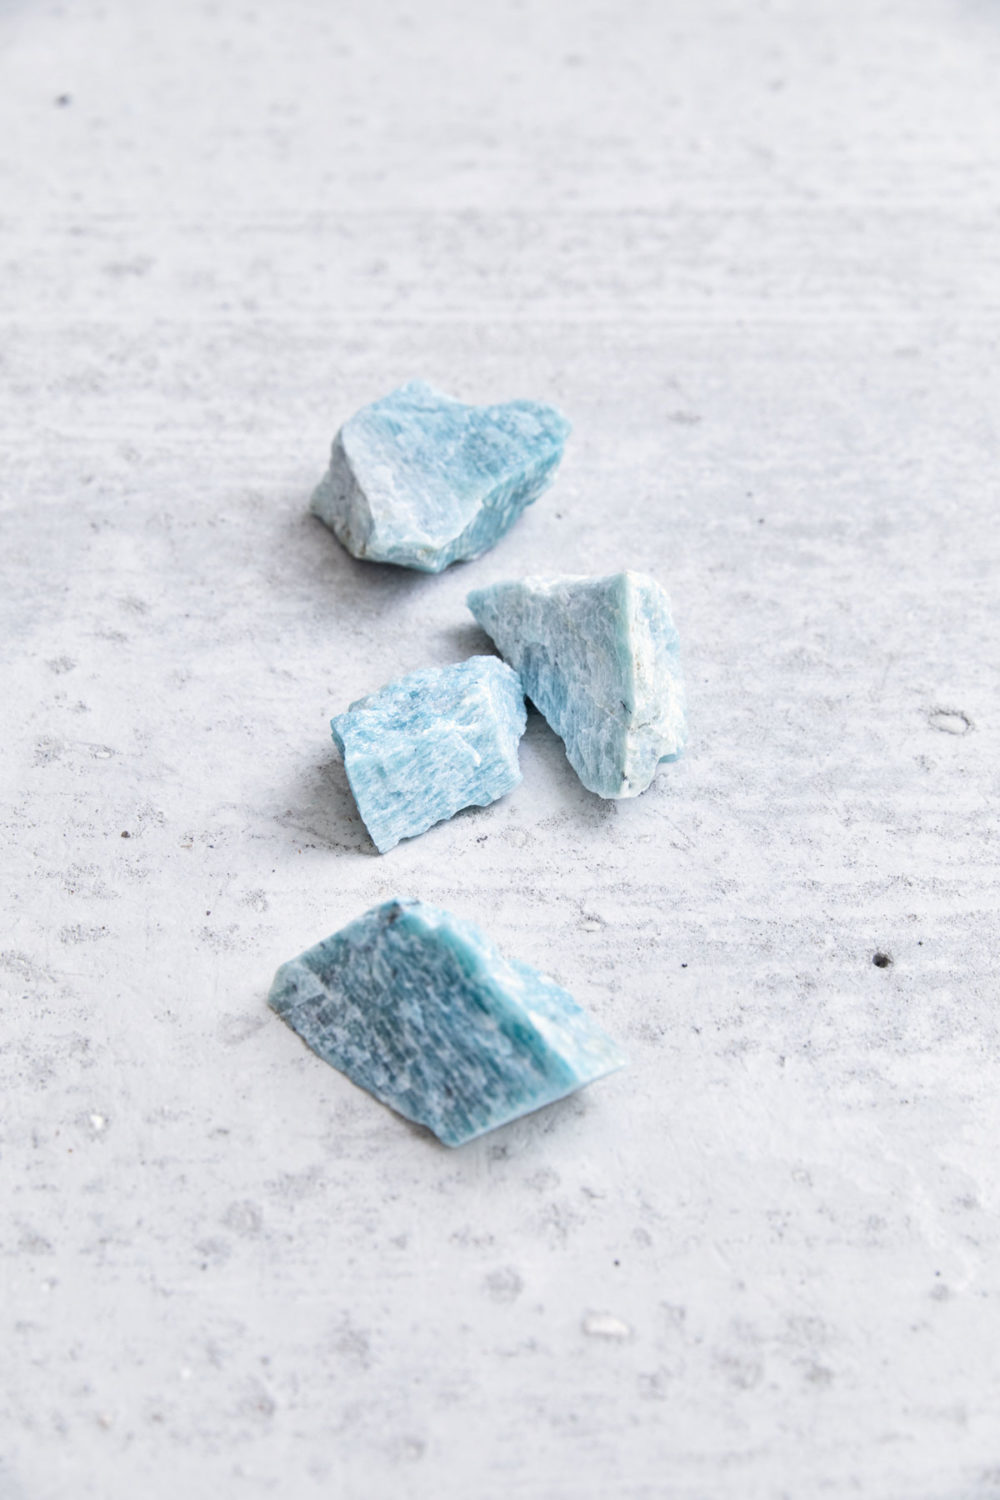 PURE BLISS – Dein Amazonit Rohstein Edelsteine crystals, NAIONA.